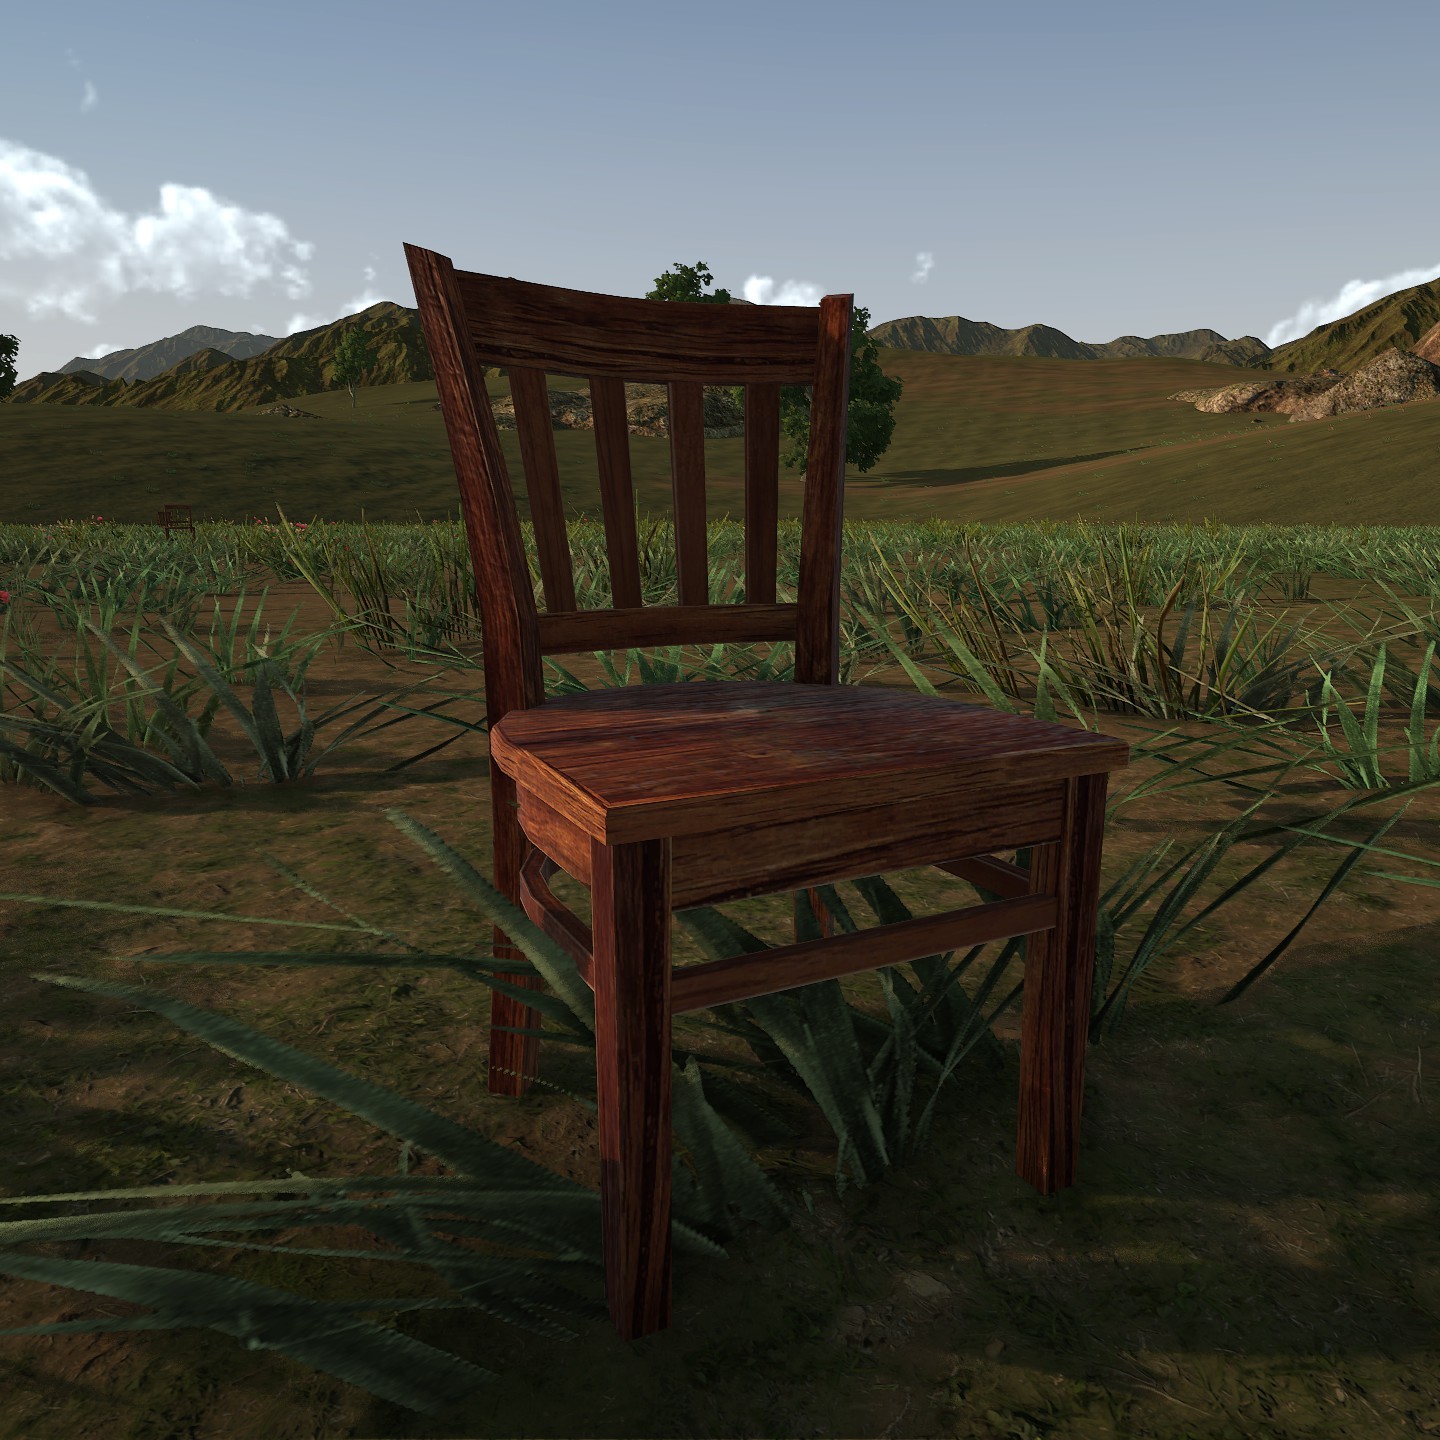 Chair3